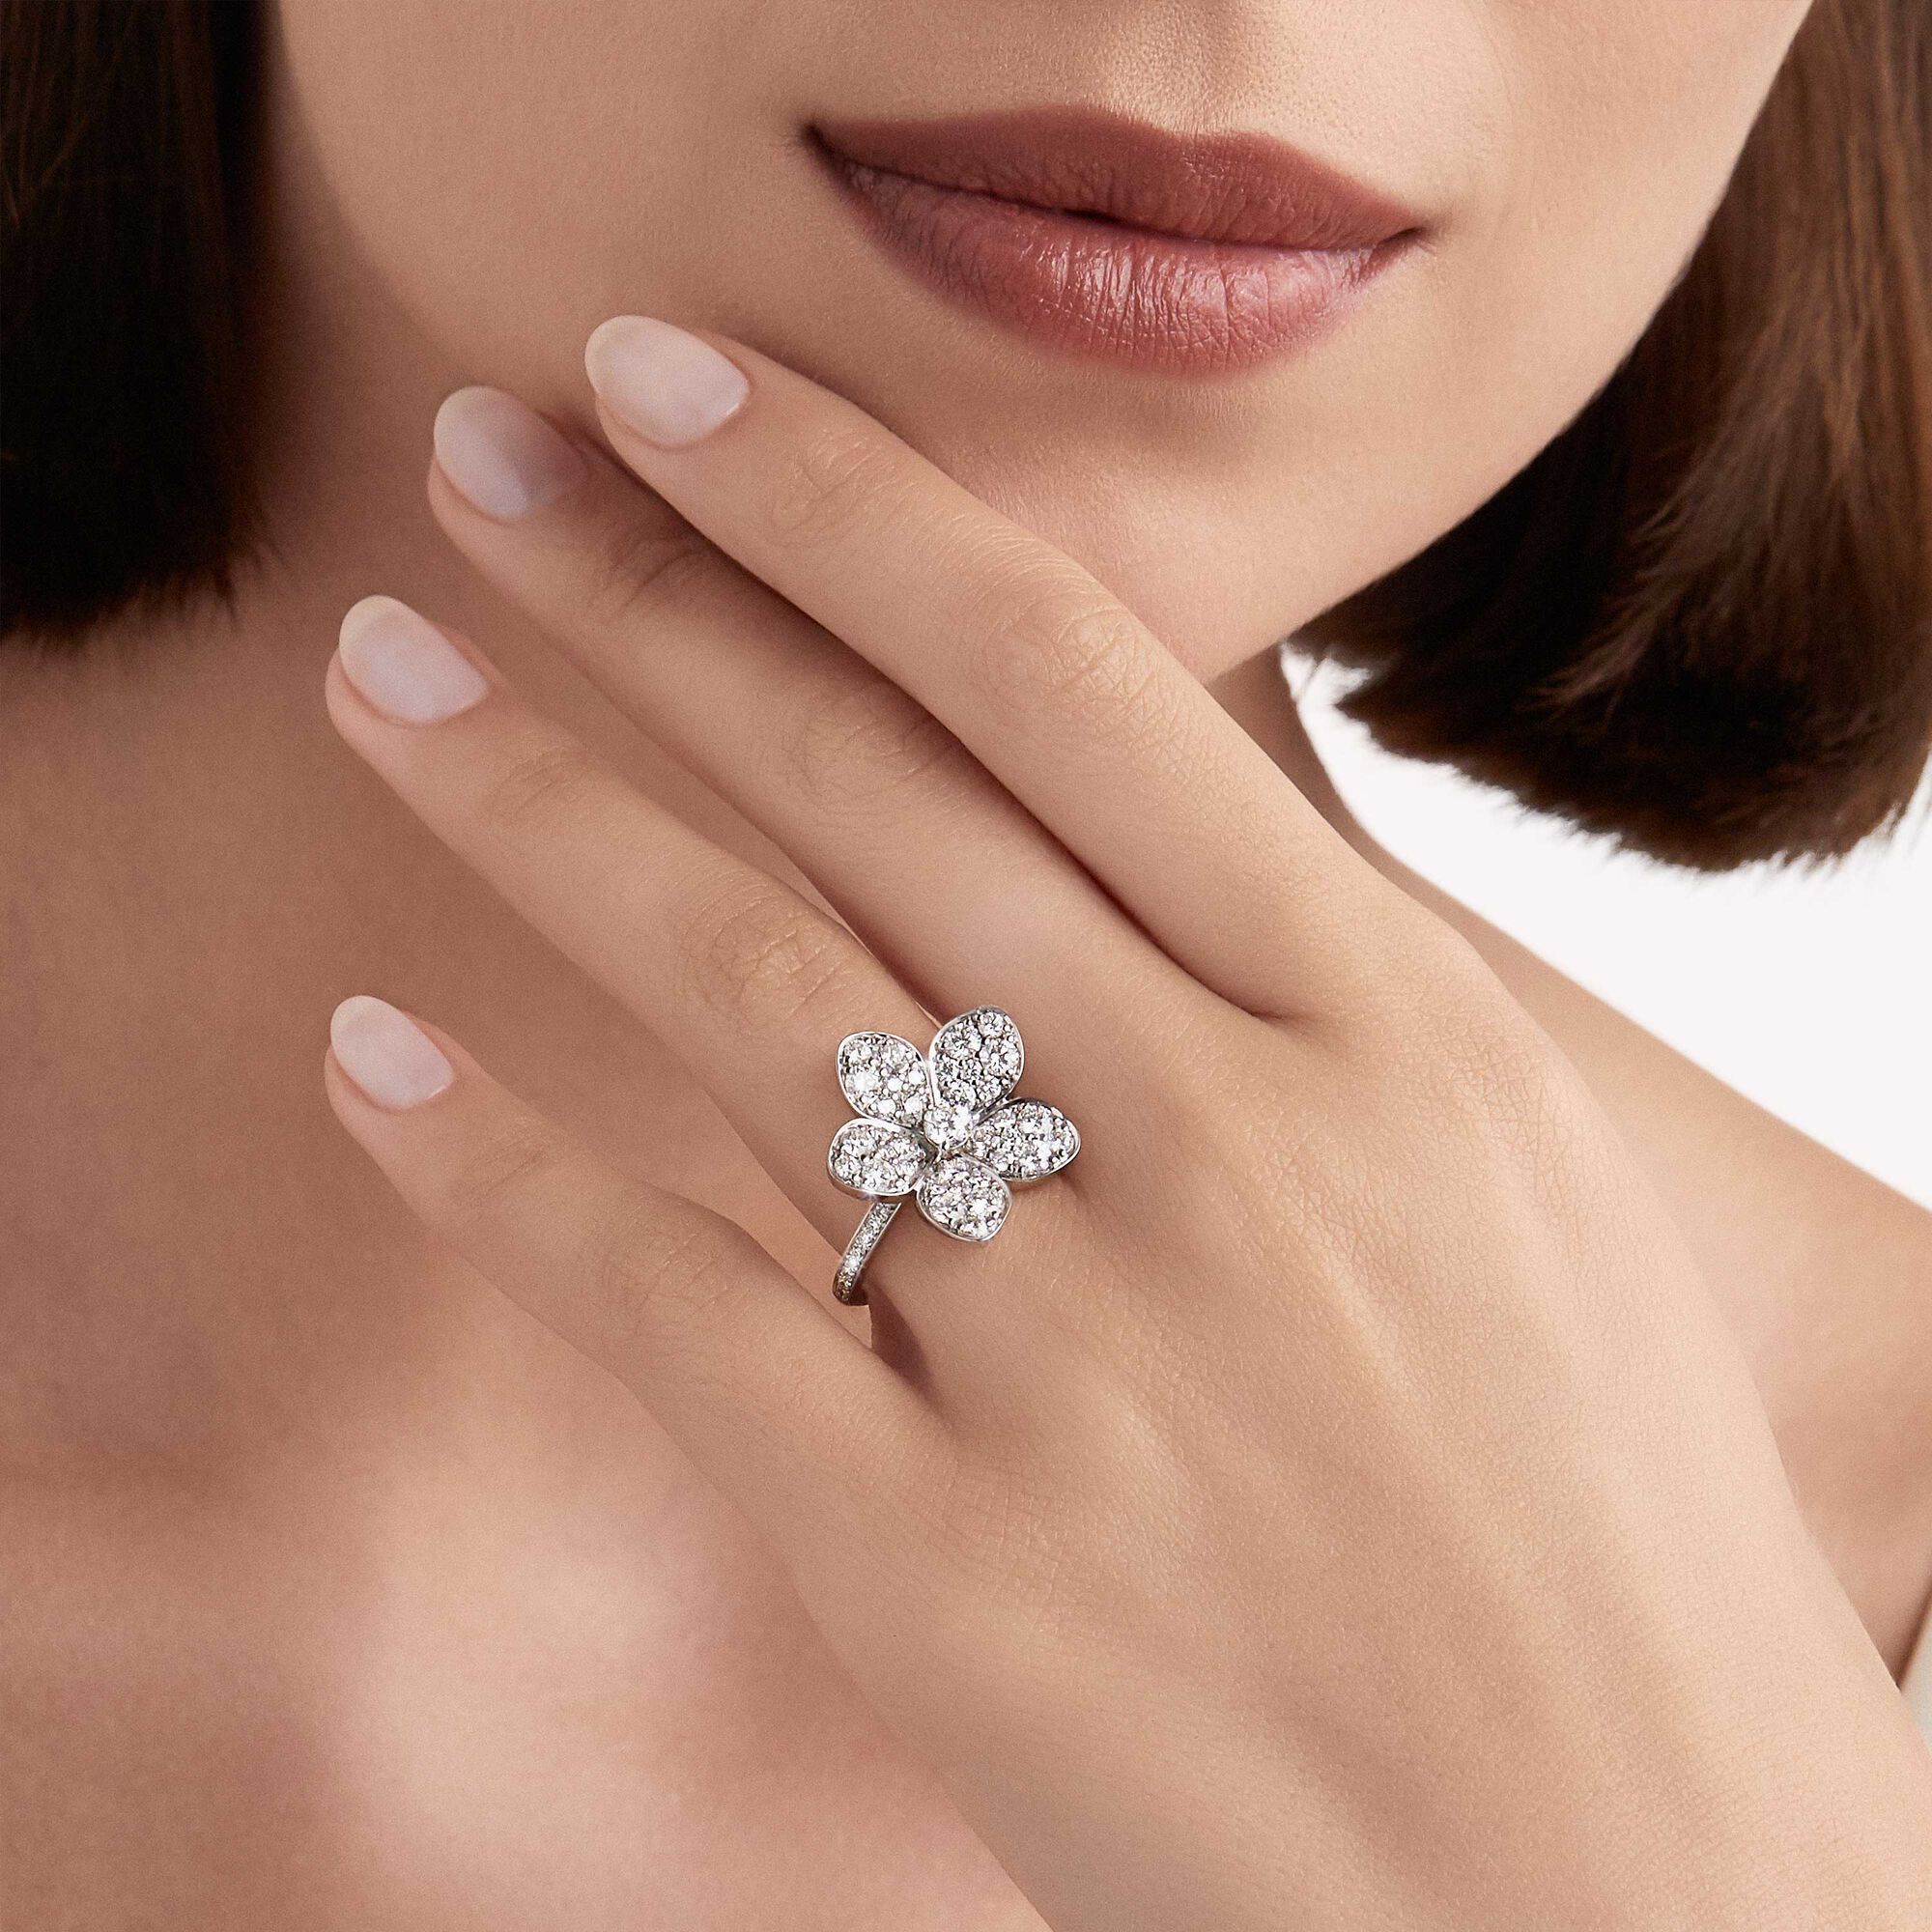 Wild Flower large pavé diamond ring, Diamond